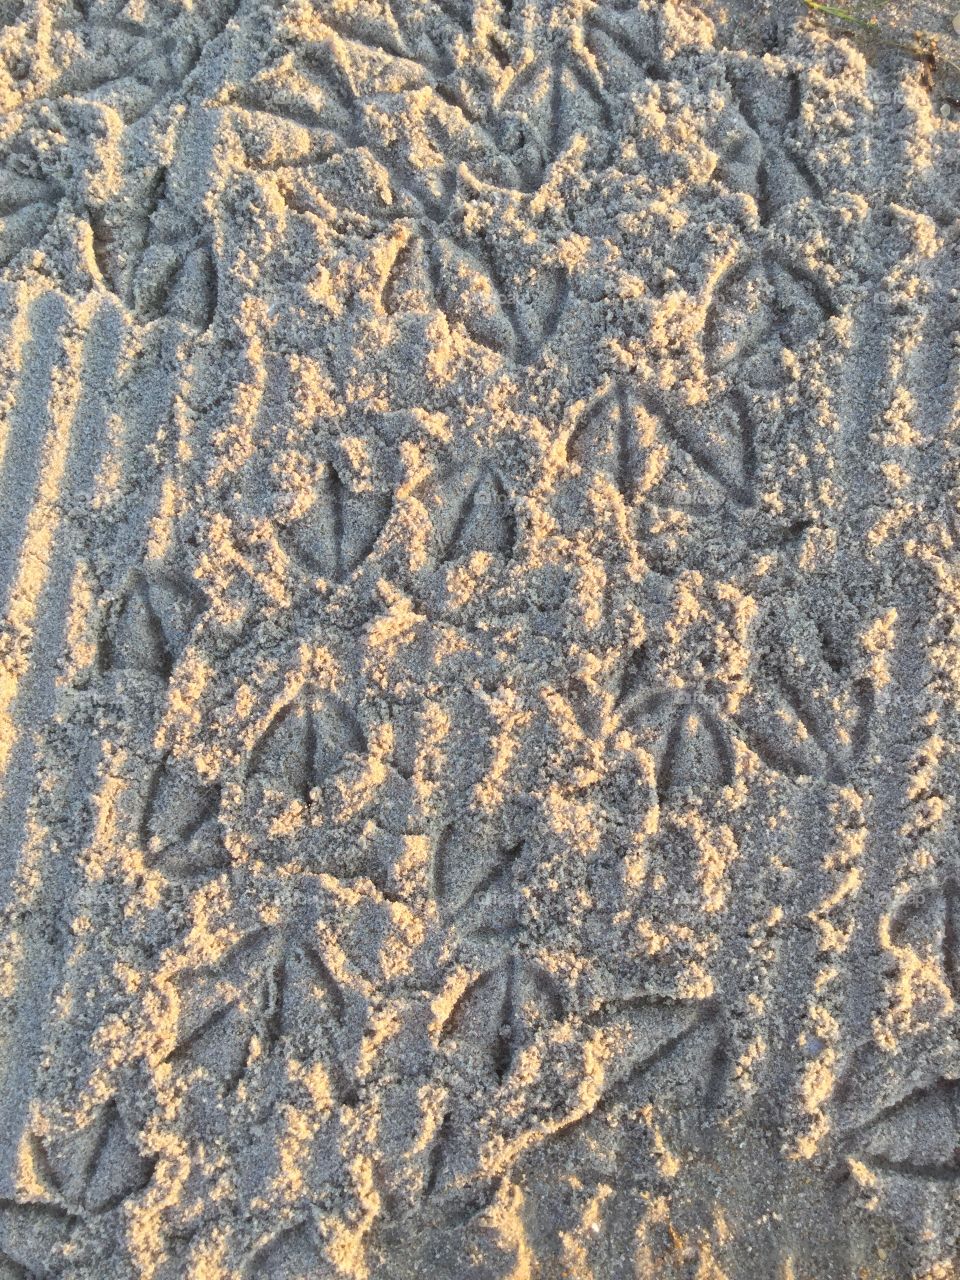 Seagull footprints 